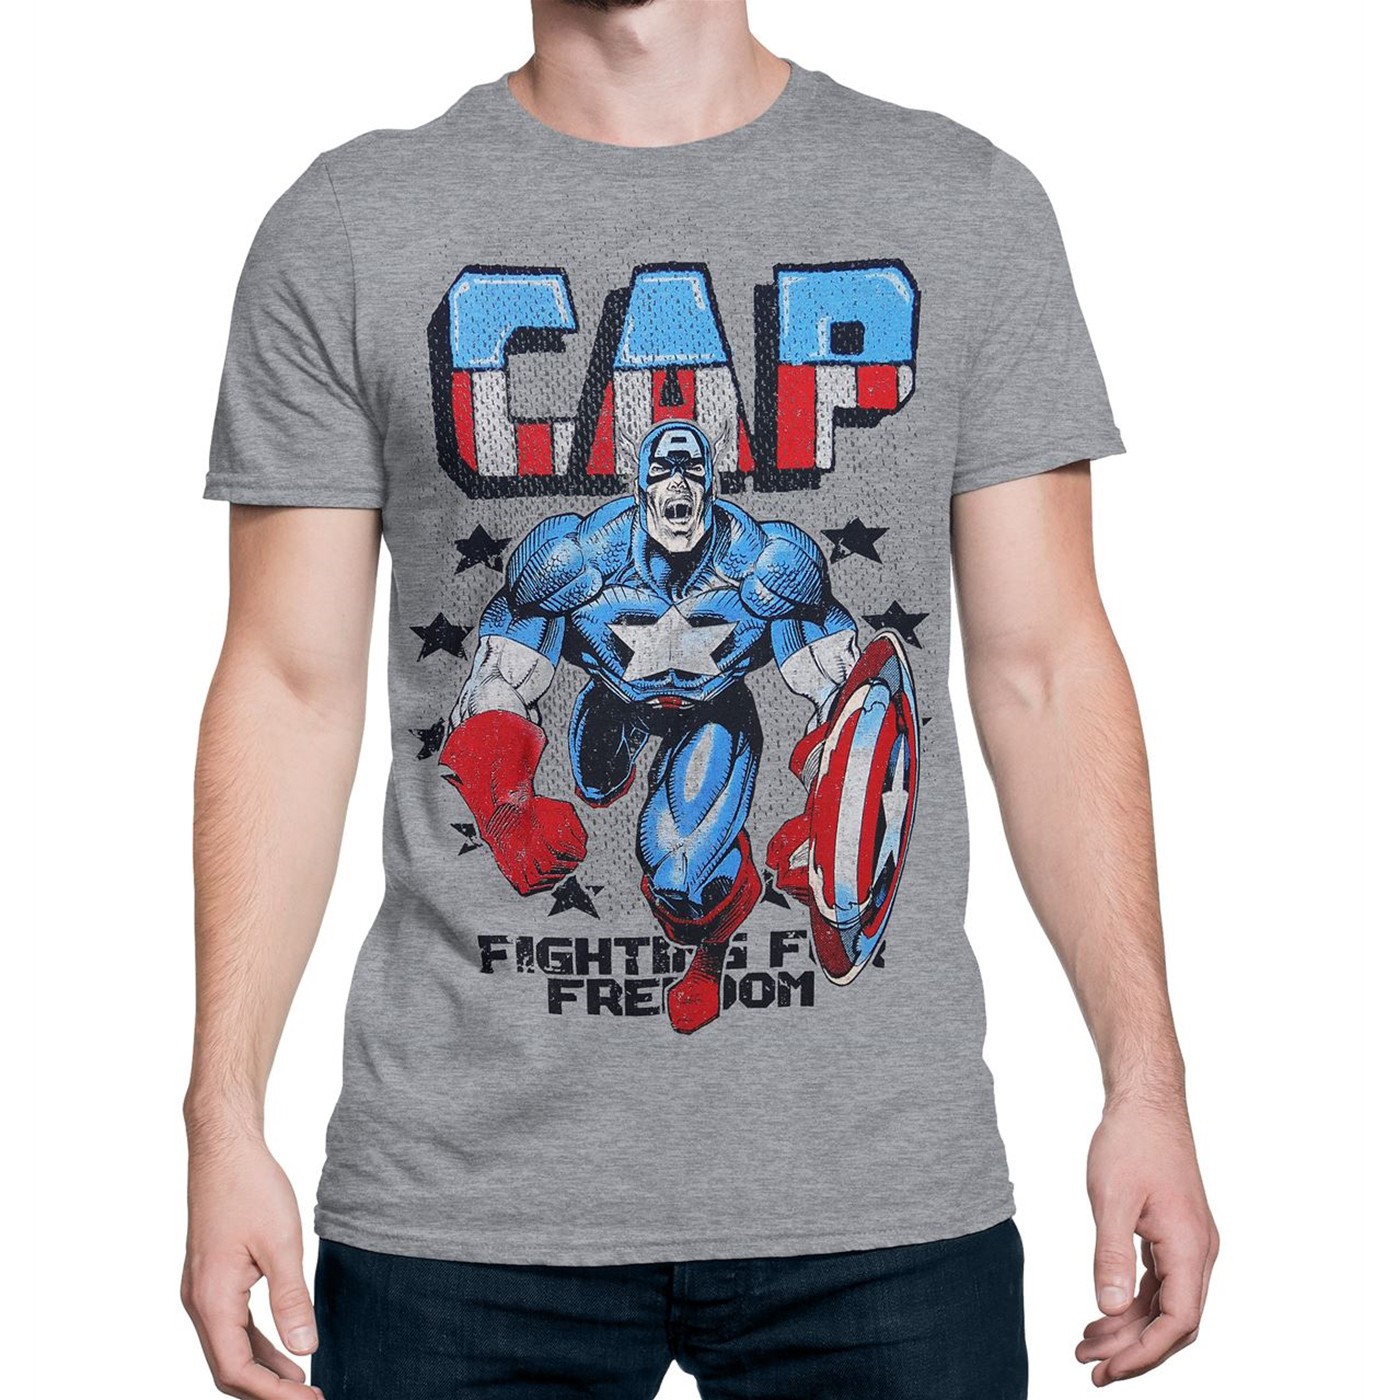 Captain America Freedom Fighter Men's T-Shirt